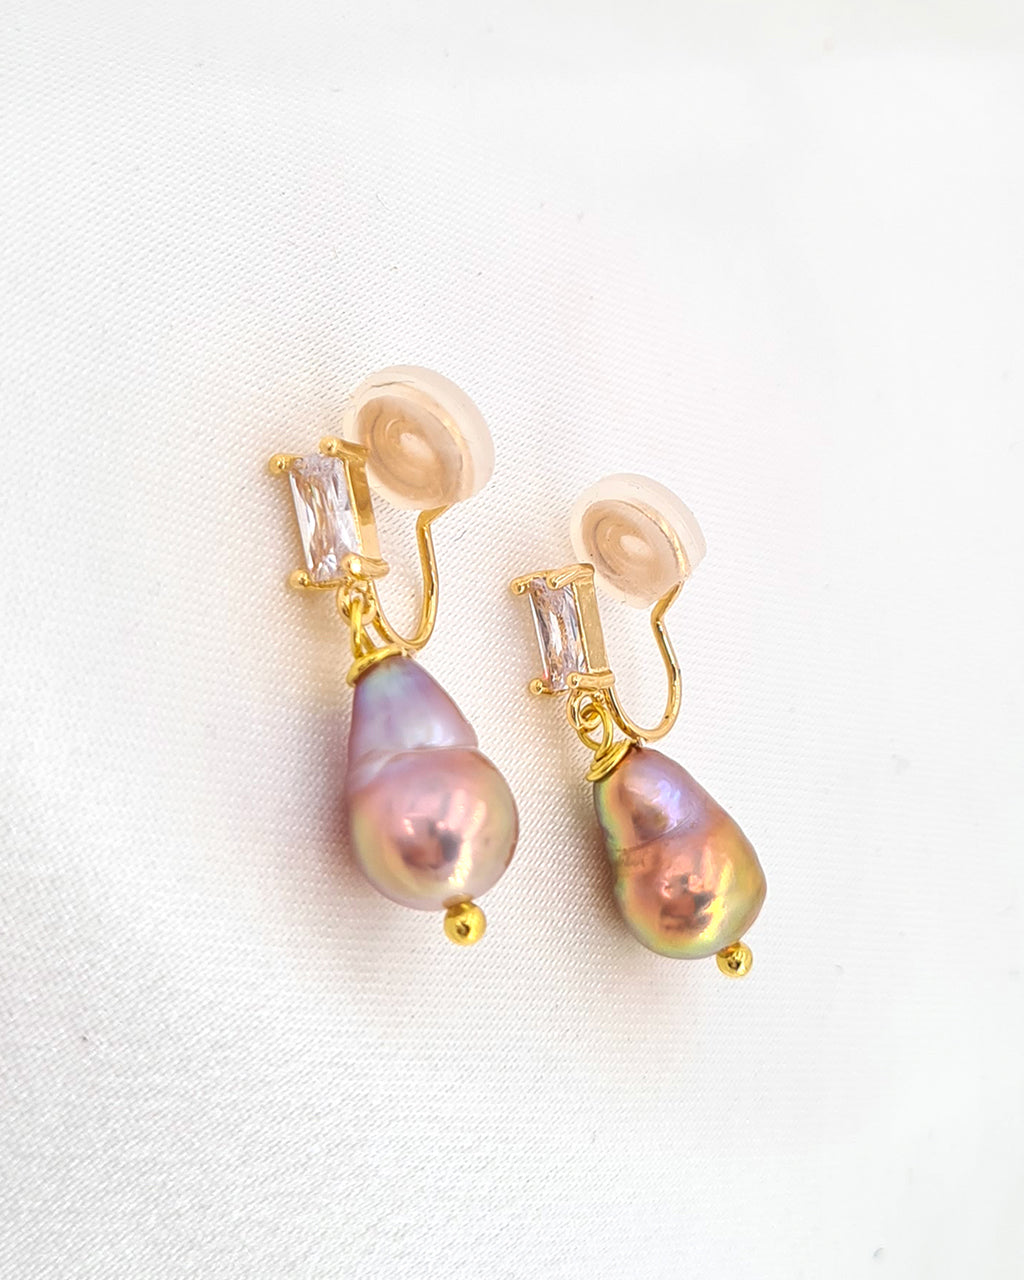 Clip-On Pearl Earrings | Freshwater Purple Pearl Clip-on Earrings | No Pierced